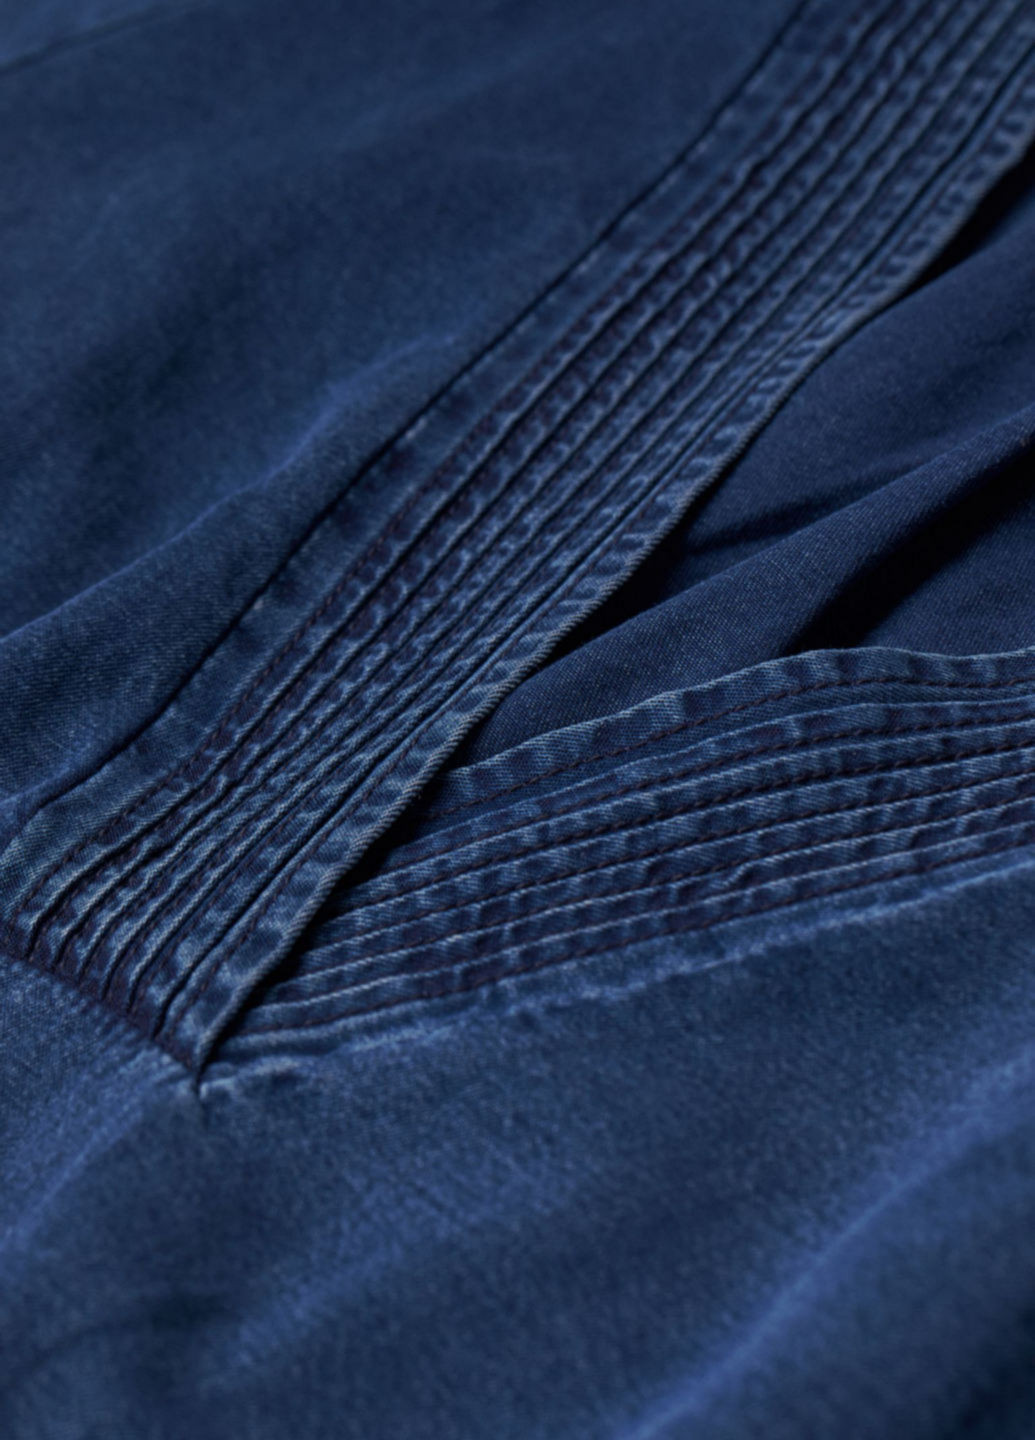 Темно-синее джинсовое платье H&M однотонное